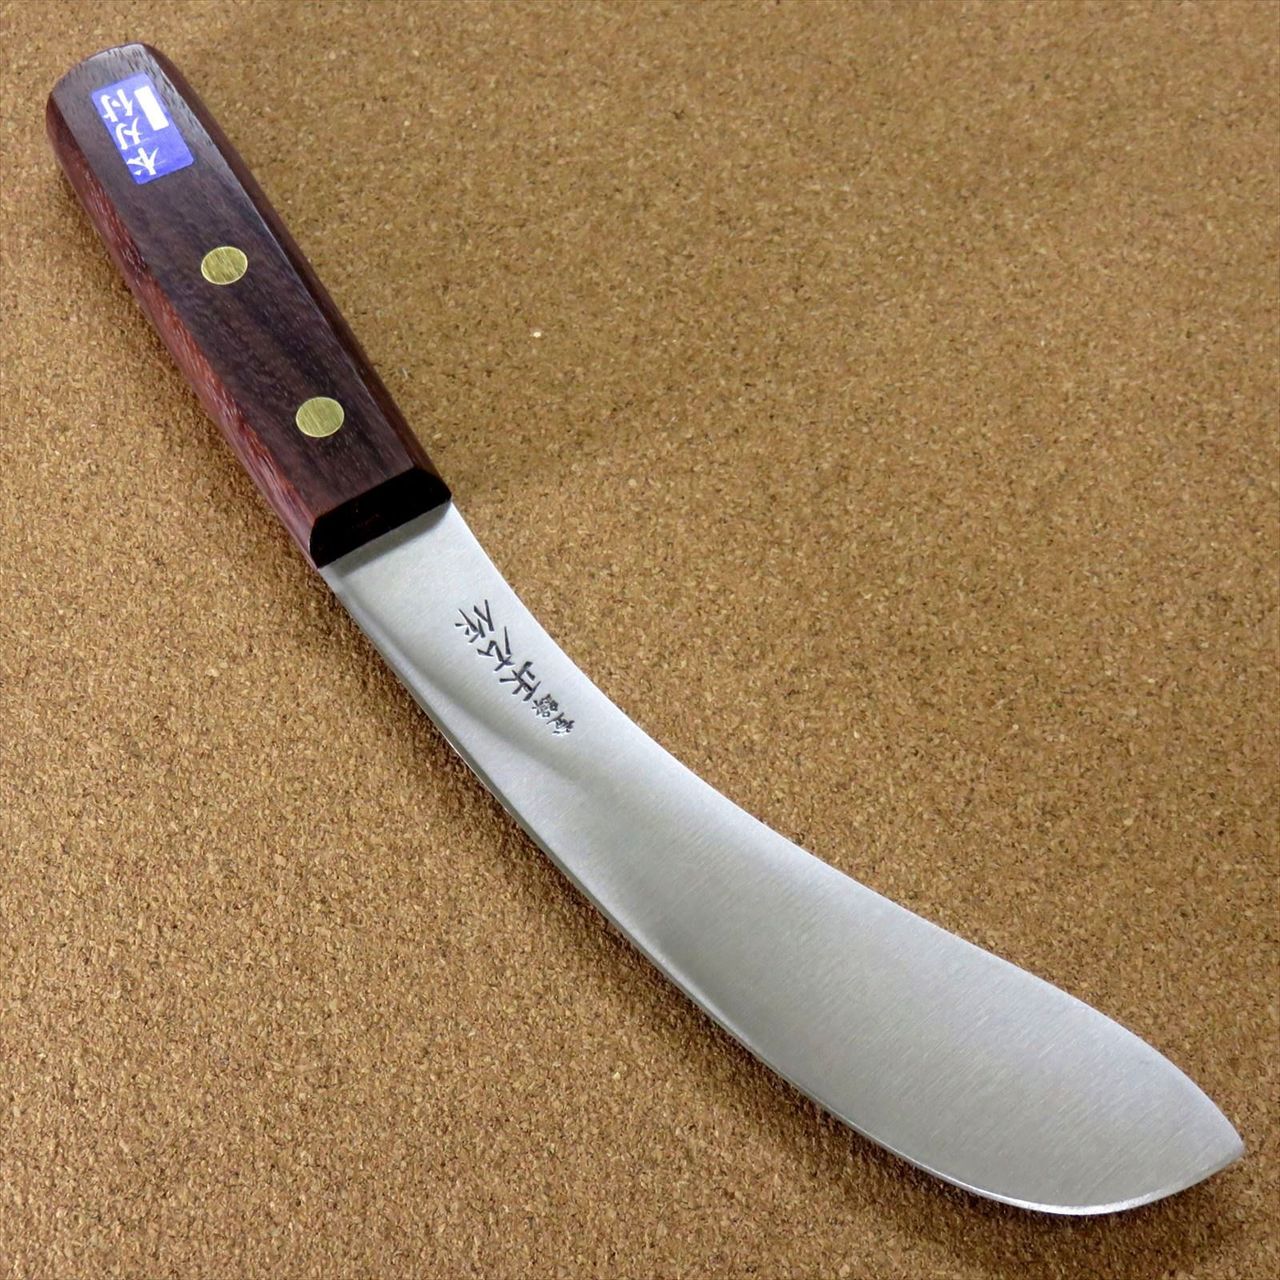 Japanese Kiyotsuna Kitchen Deba Knife 9 inch Single edged Right